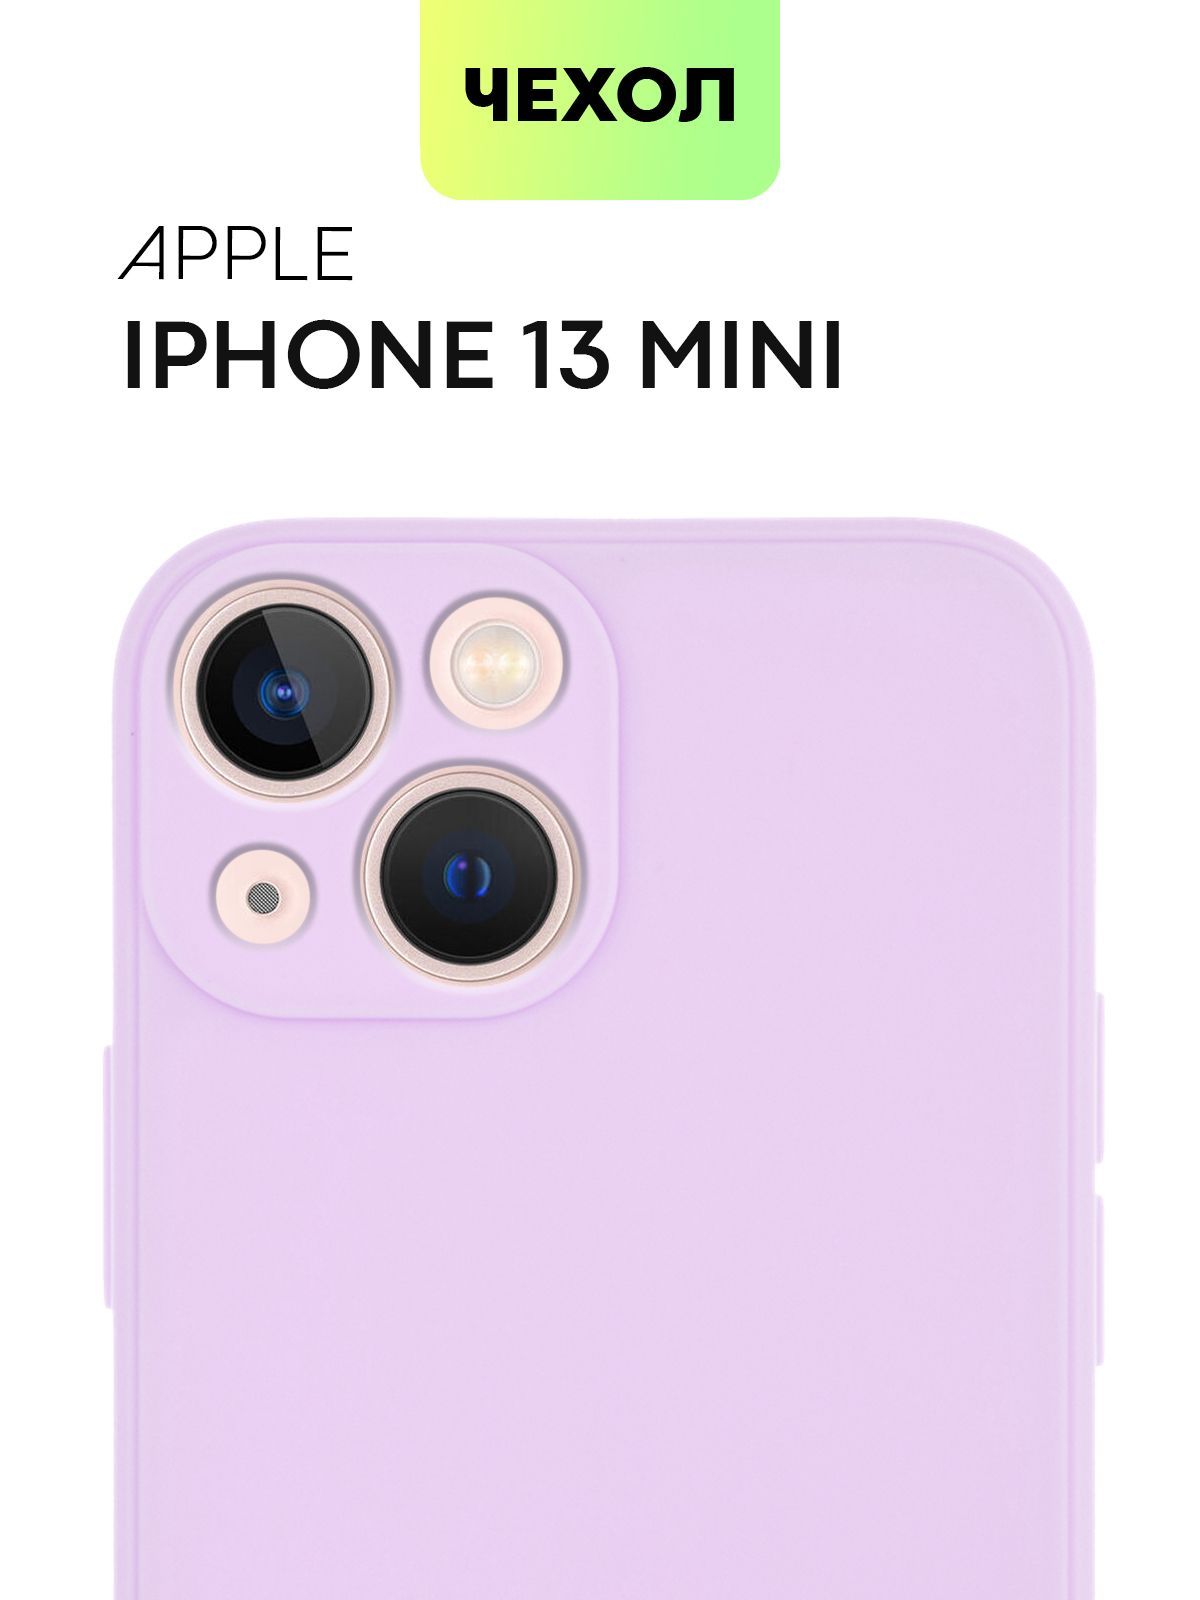 Чехол для Apple iPhone 13 mini (Эпл Айфон 13 мини), тонкая полимерная из  качественного силикона с матовым покрытием и бортиком (защитой) вокруг  модуля камер, бренд BROSCORP, сиреневая - купить с доставкой по